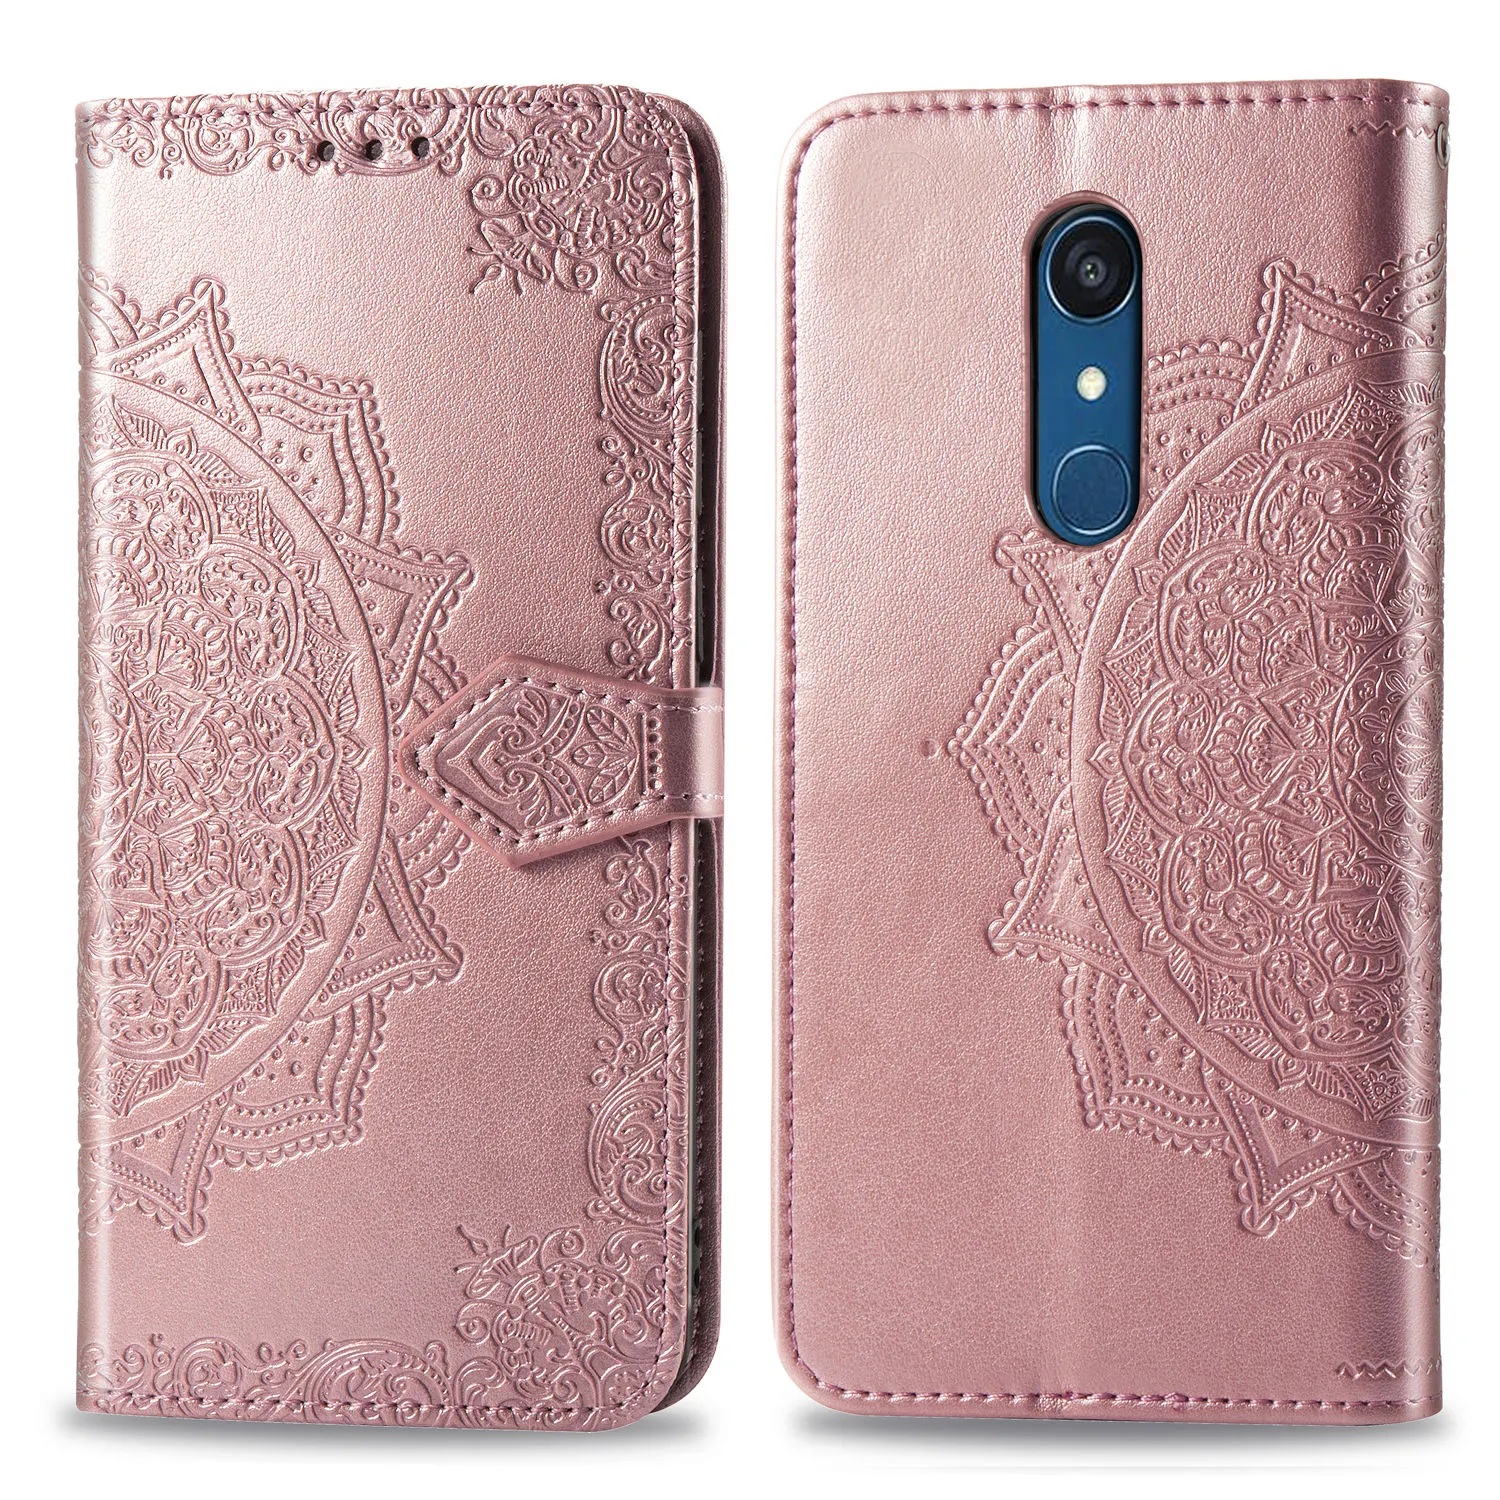 En relieve de cuero de Mandala caja del teléfono para LG K7 K8 LTE K350 K350E caso para LG K8 K10 2017 caso con titular de la tarjeta